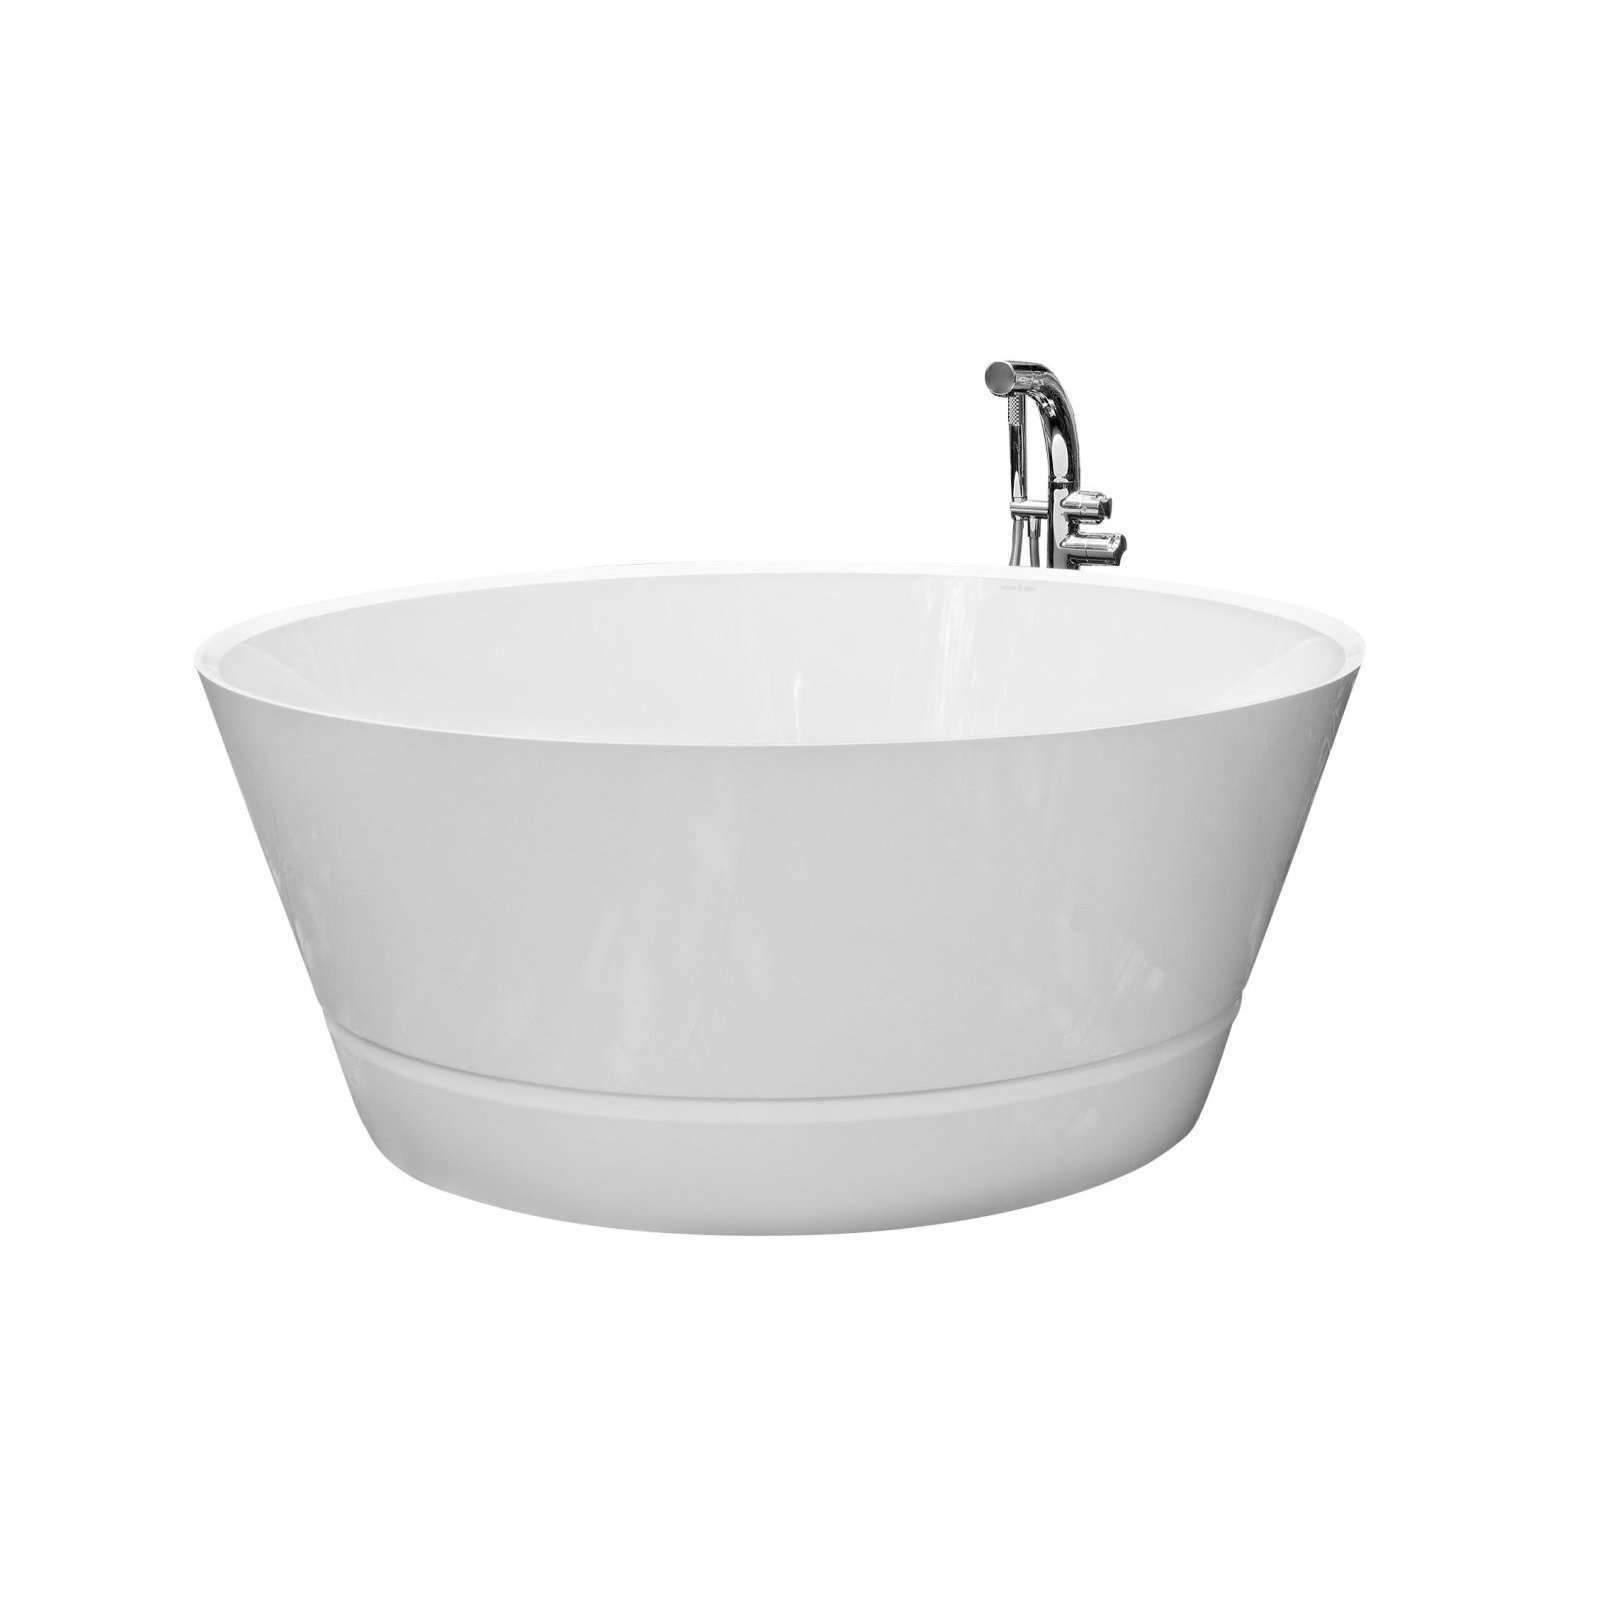 V+A Taizu Freestanding Bath No Overflow Quarrycast White - Burdens Plumbing